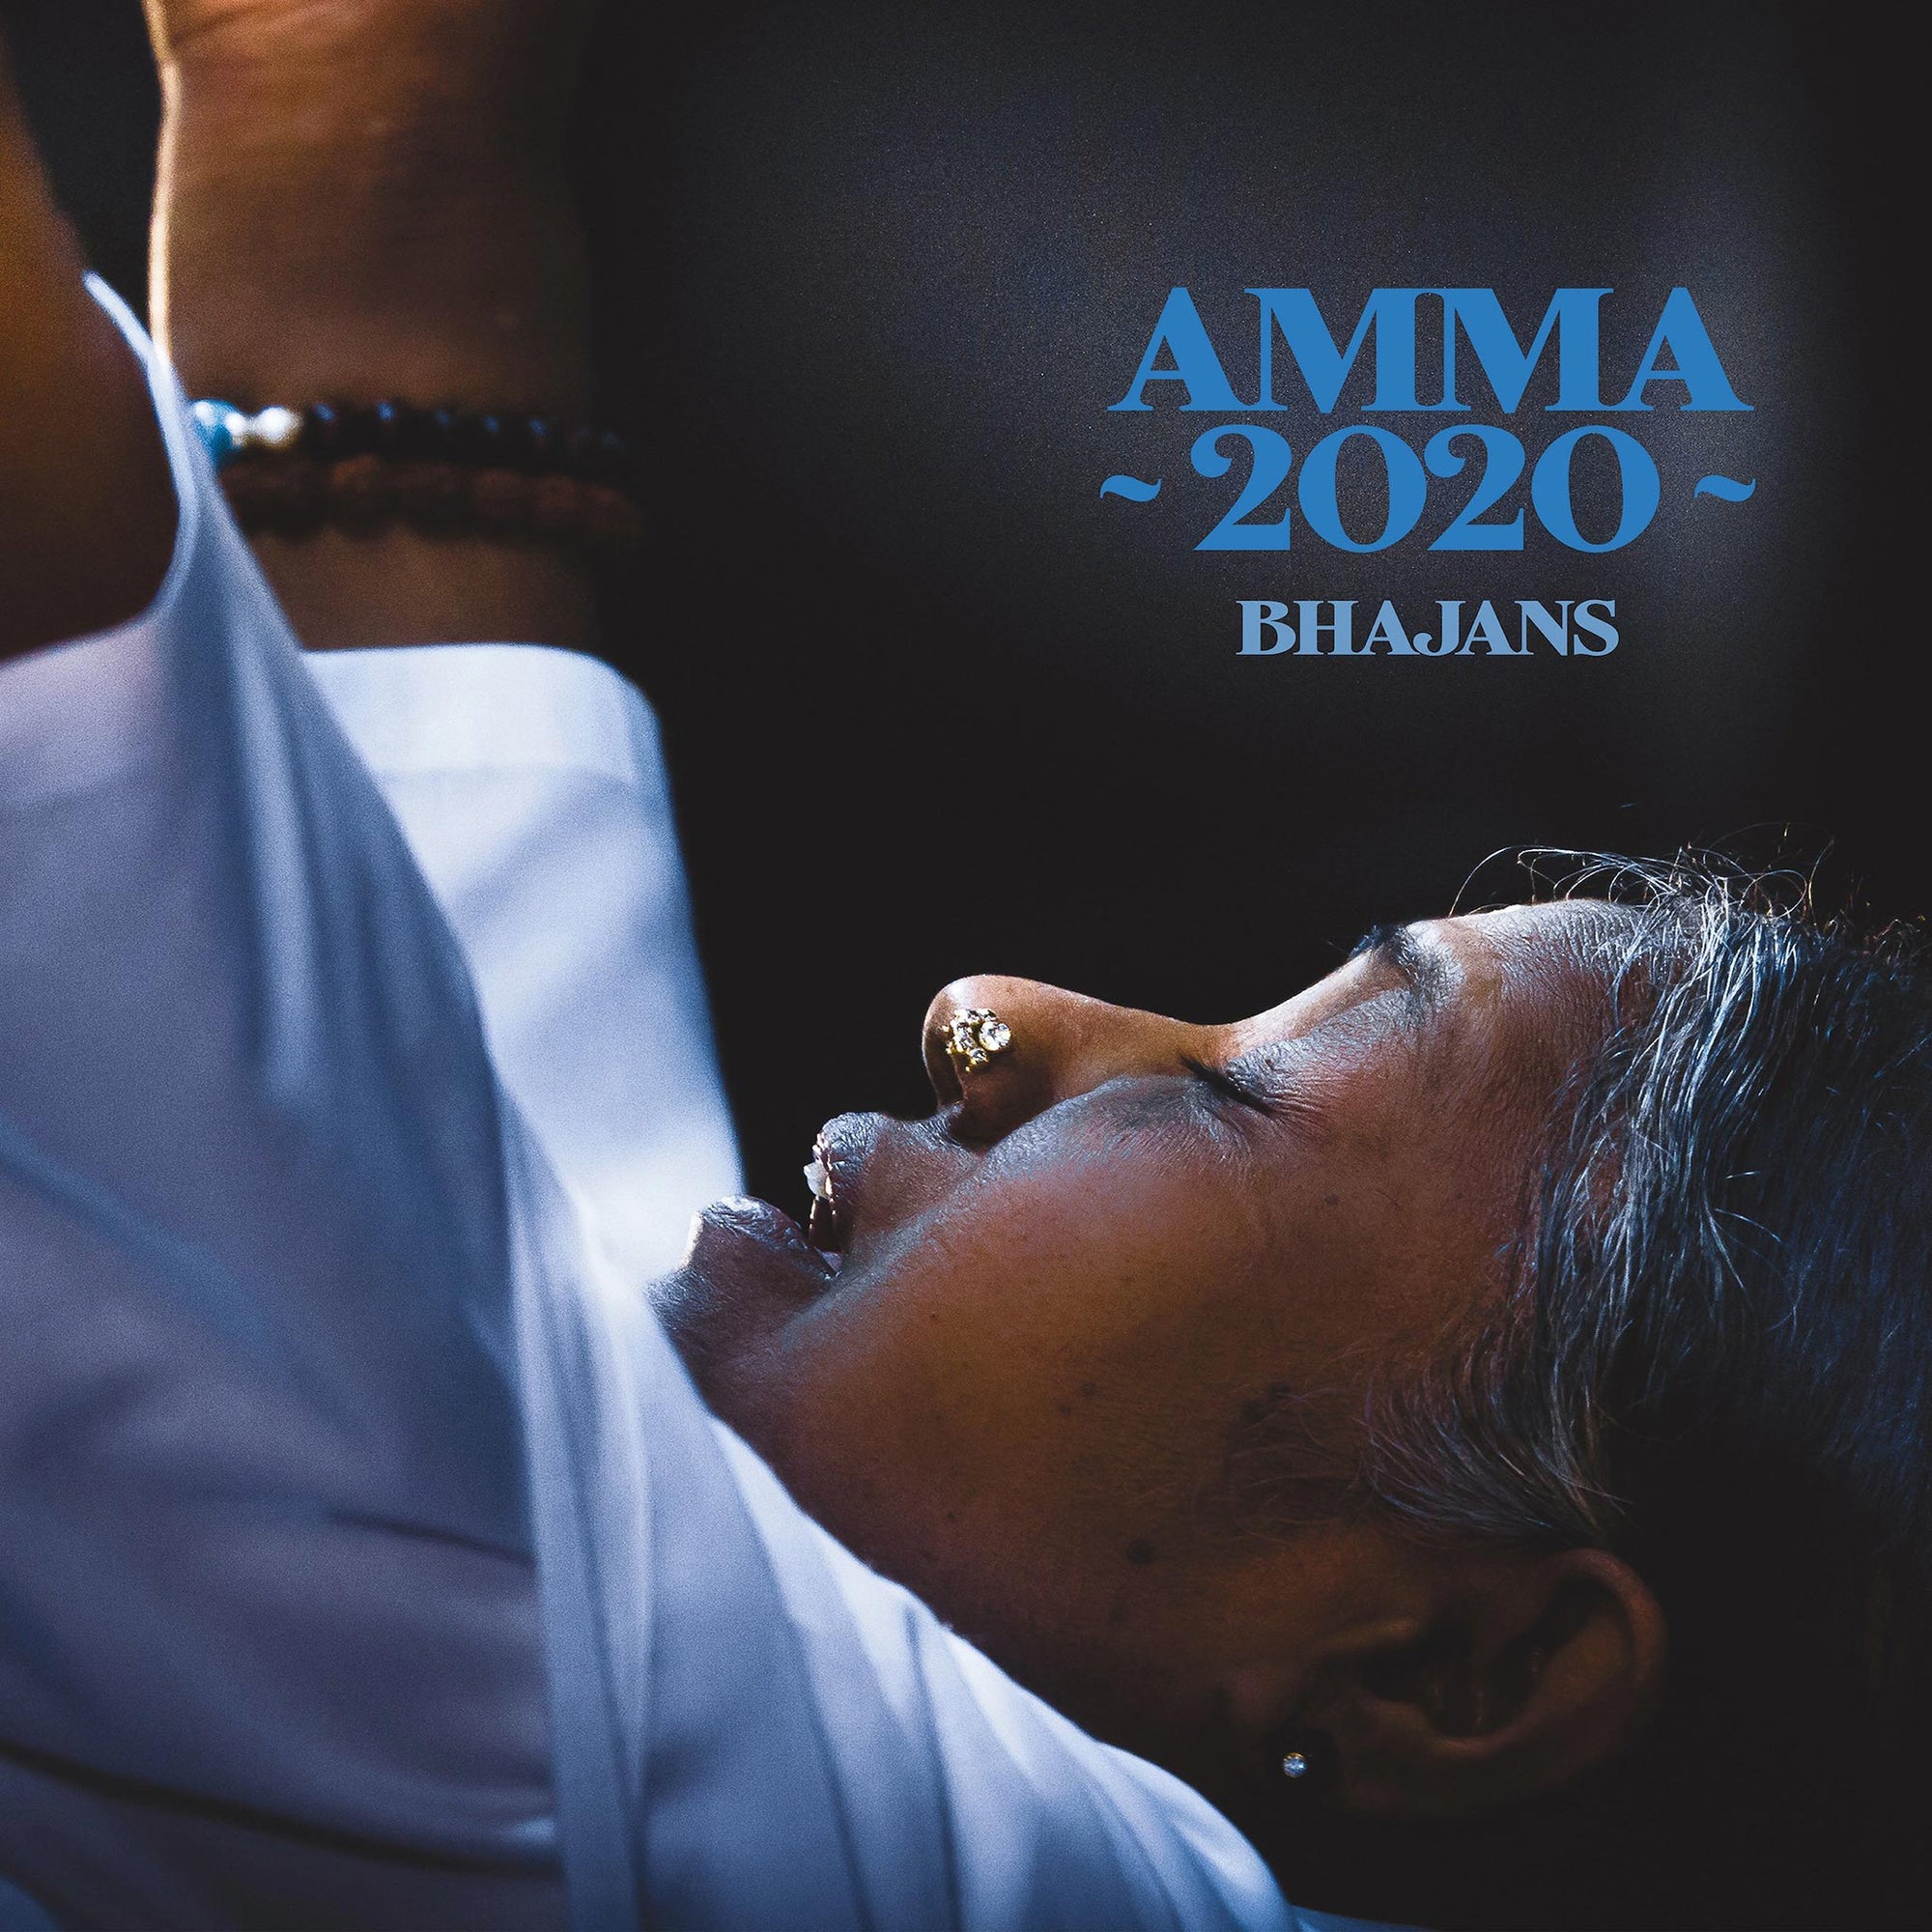 Amma 2020 Bhajans - HEBREW (Digital)